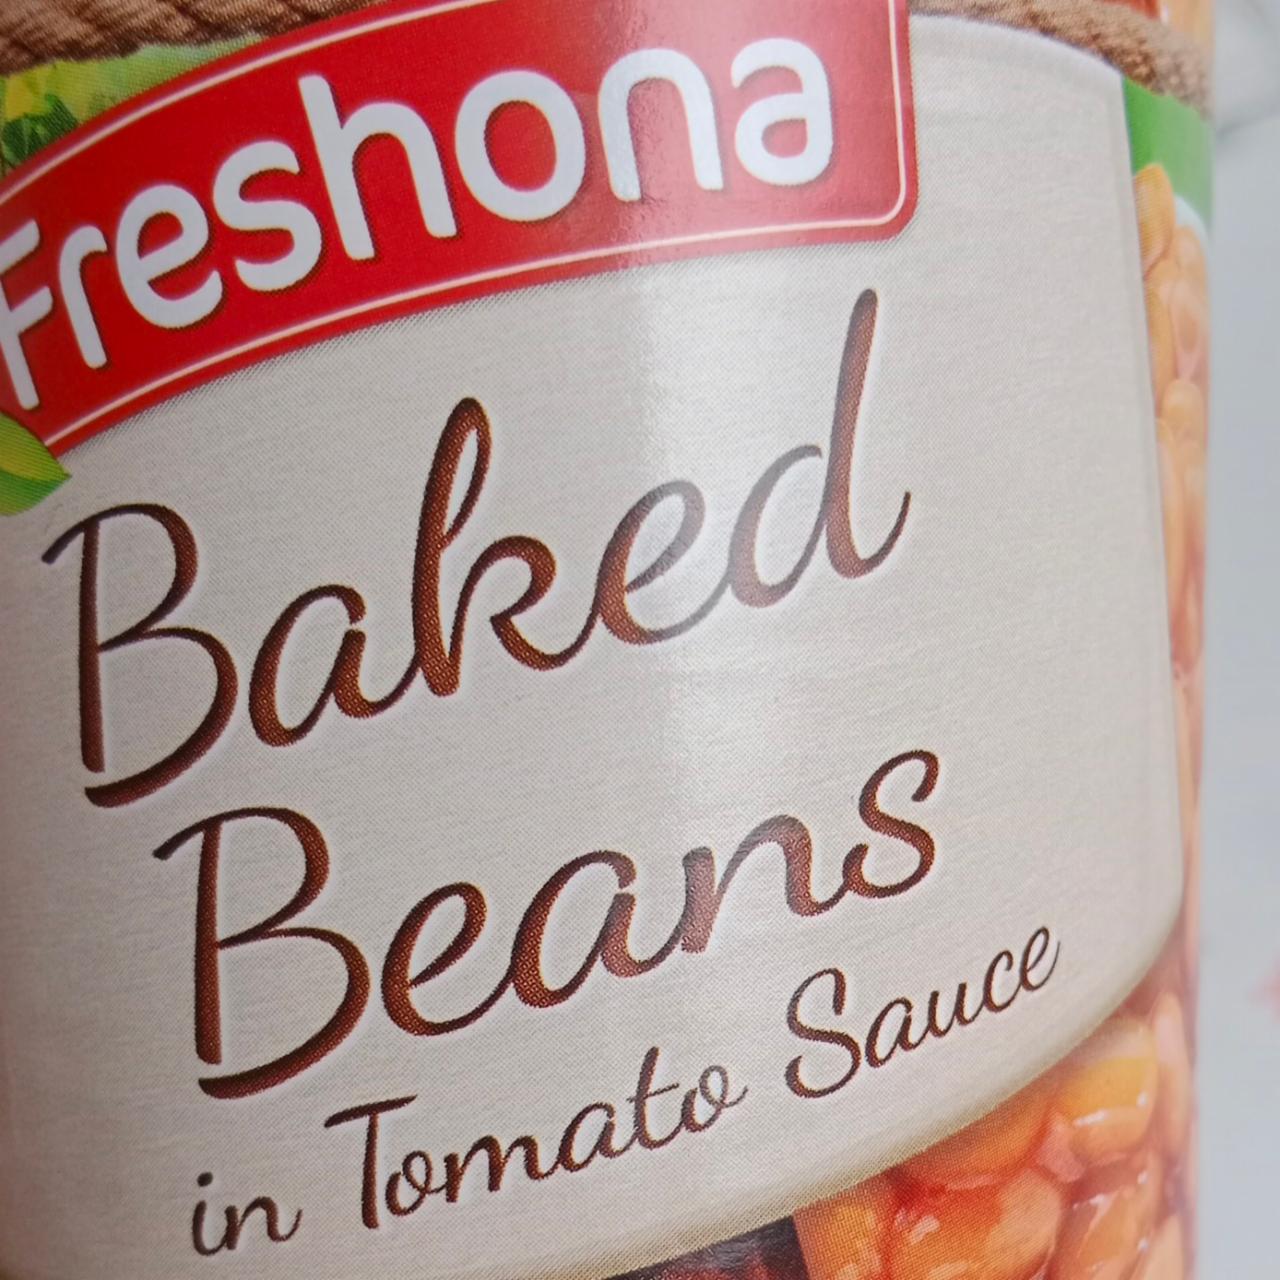 Fotografie - Baked beans in tomato sauce Freshona